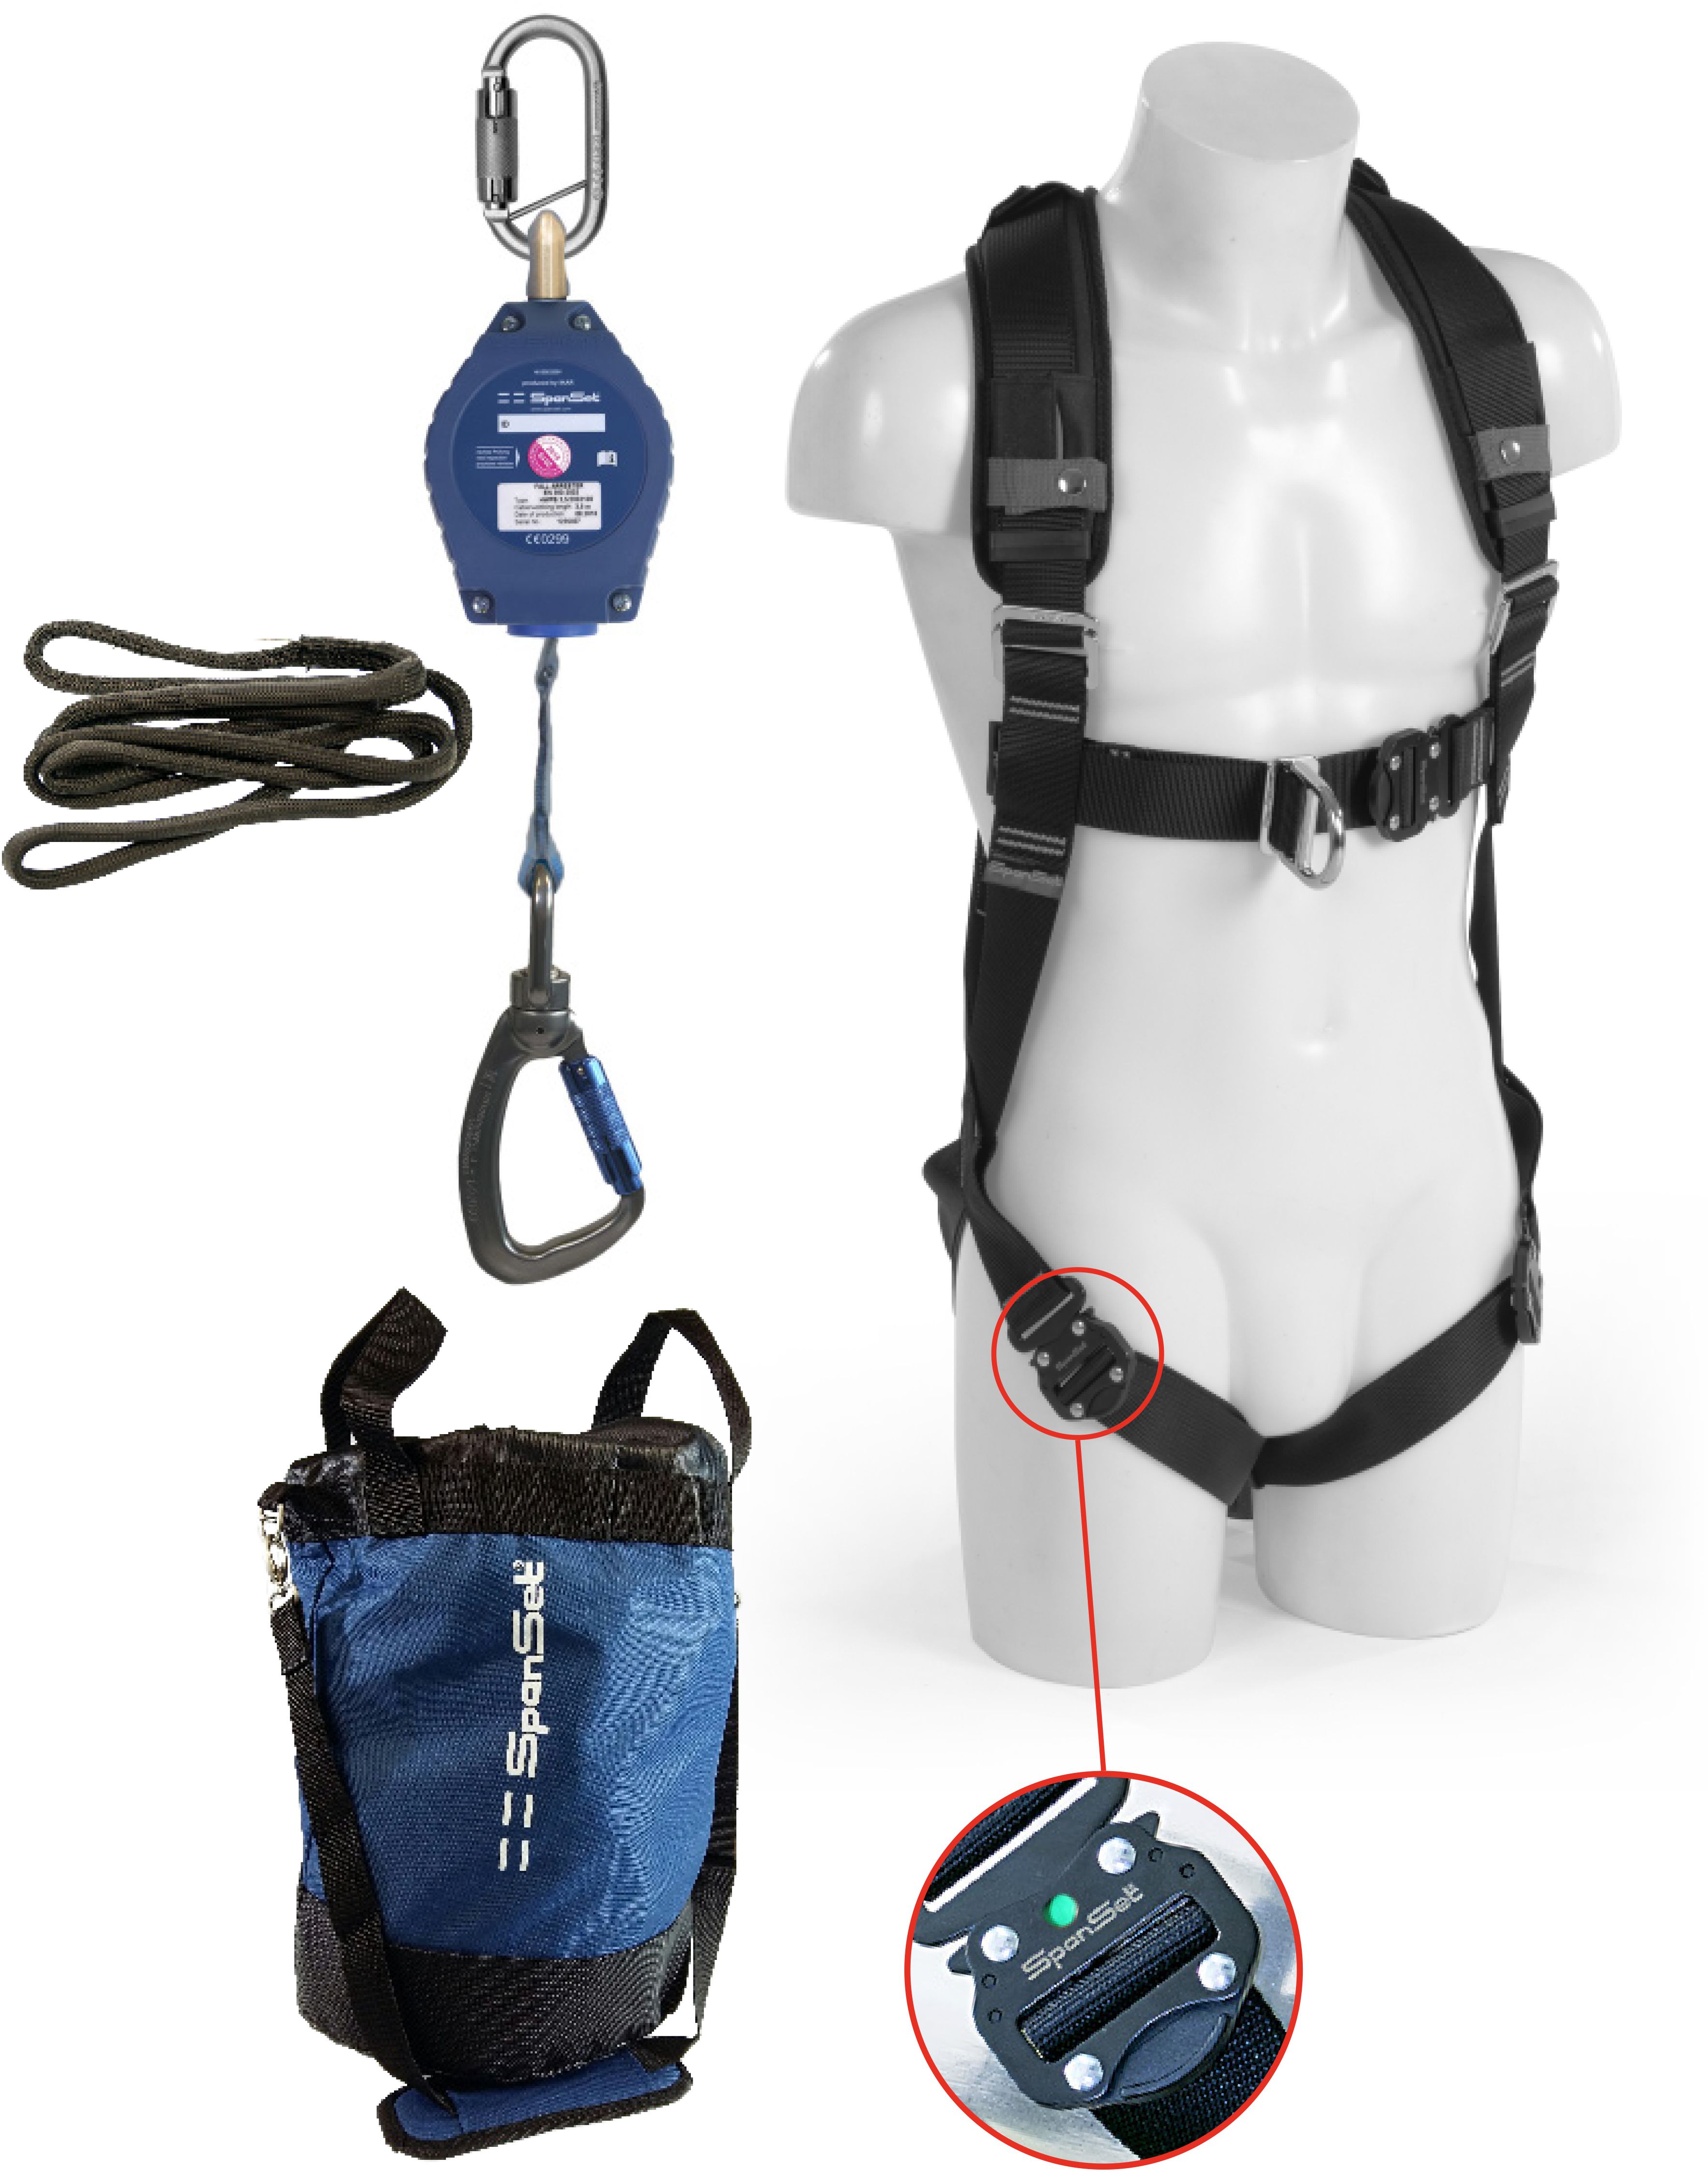 SPANSET Safety-Kit für allg. Arbeitsbereiche 3.5m Typ SK-401 Gep. 2-Punkt-Auffangg. Höhensi.ger. - Arbeitsschutz